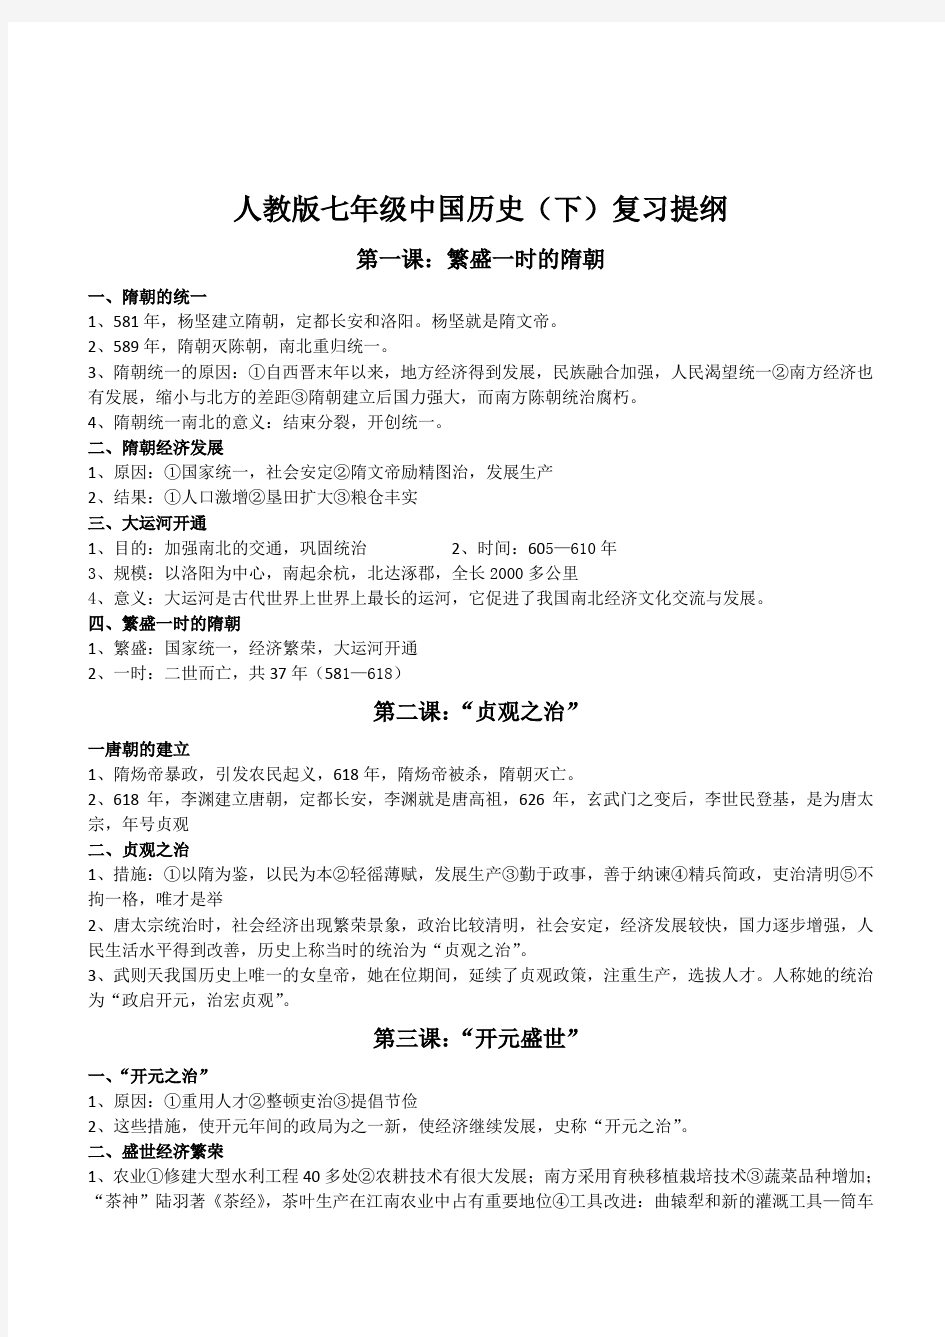 人教版七年级中国历史(下册)复习提纲知识要点整理